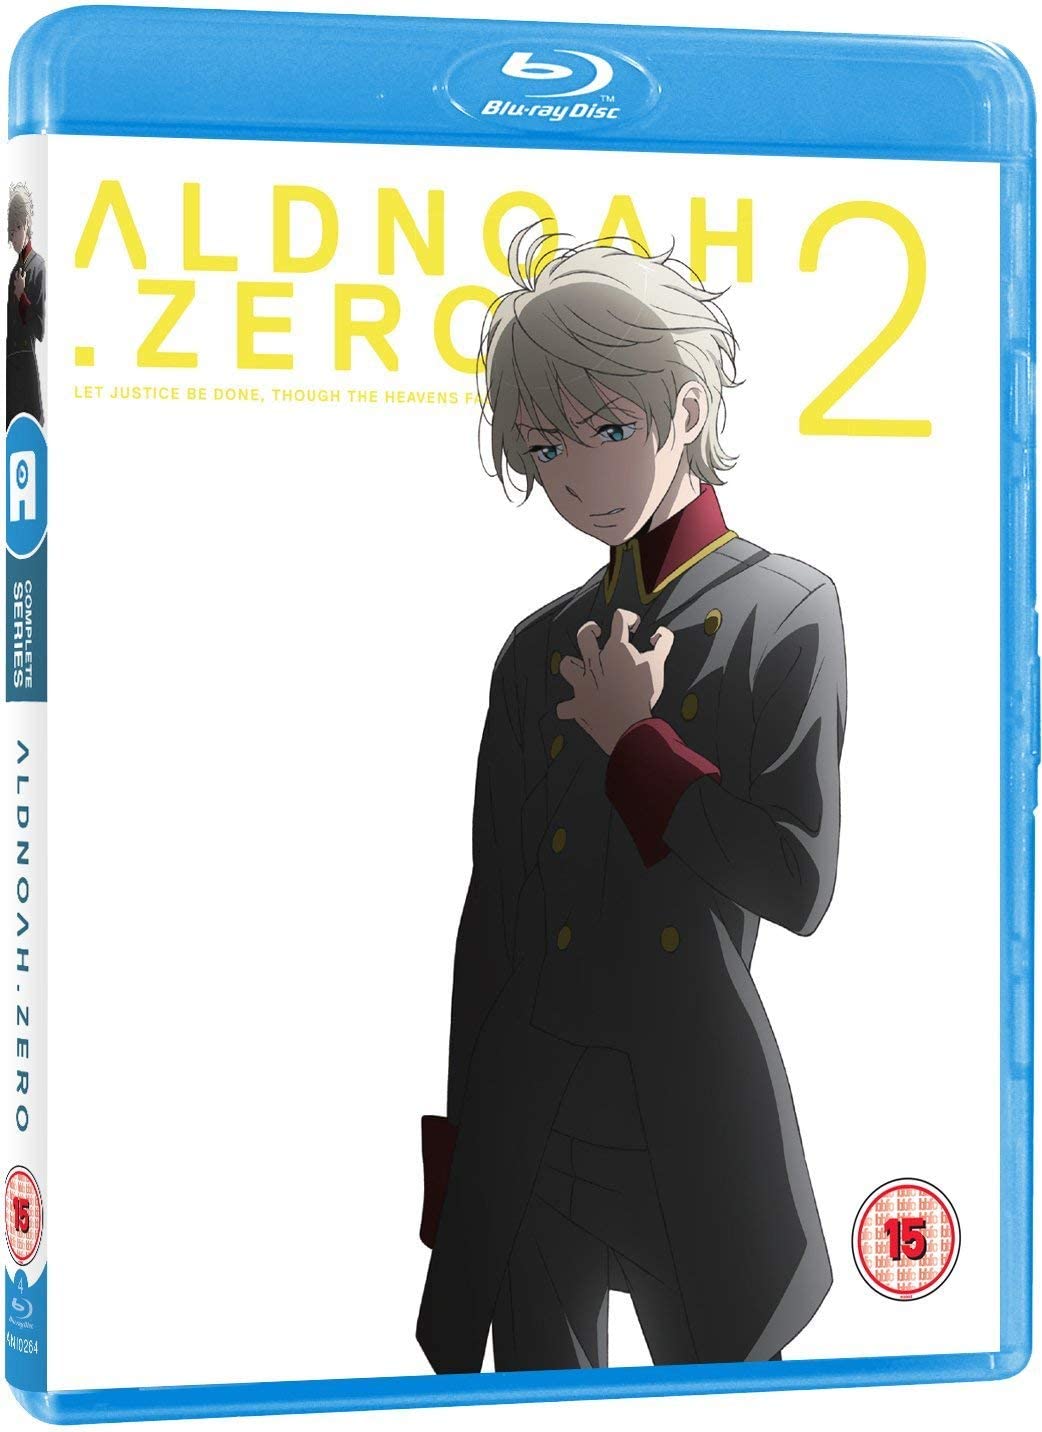 UK Anime Network - Aldnoah Zero - Season 2